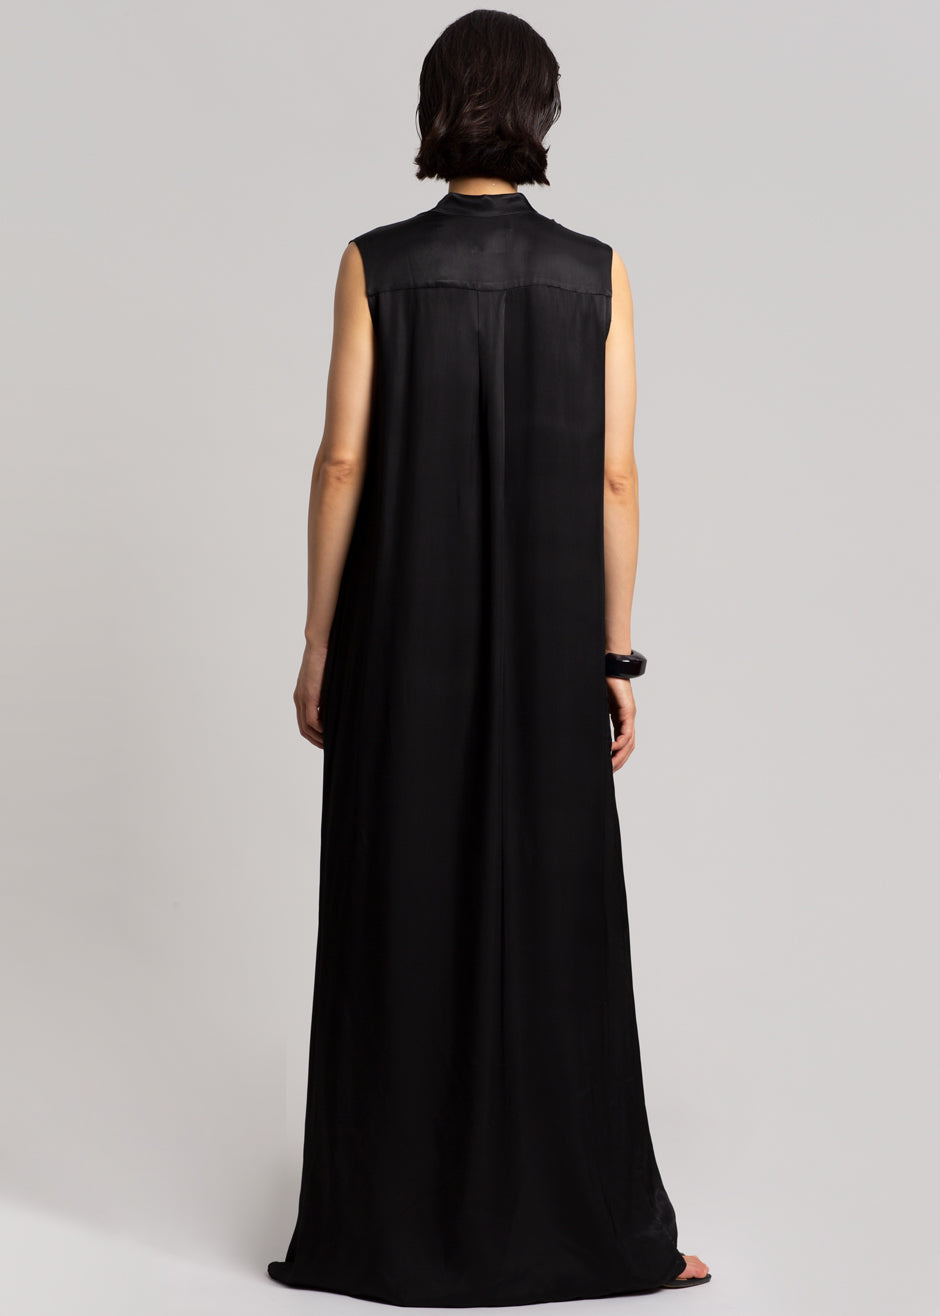 MATIN Sleeveless Button-up Dress - Black - 8